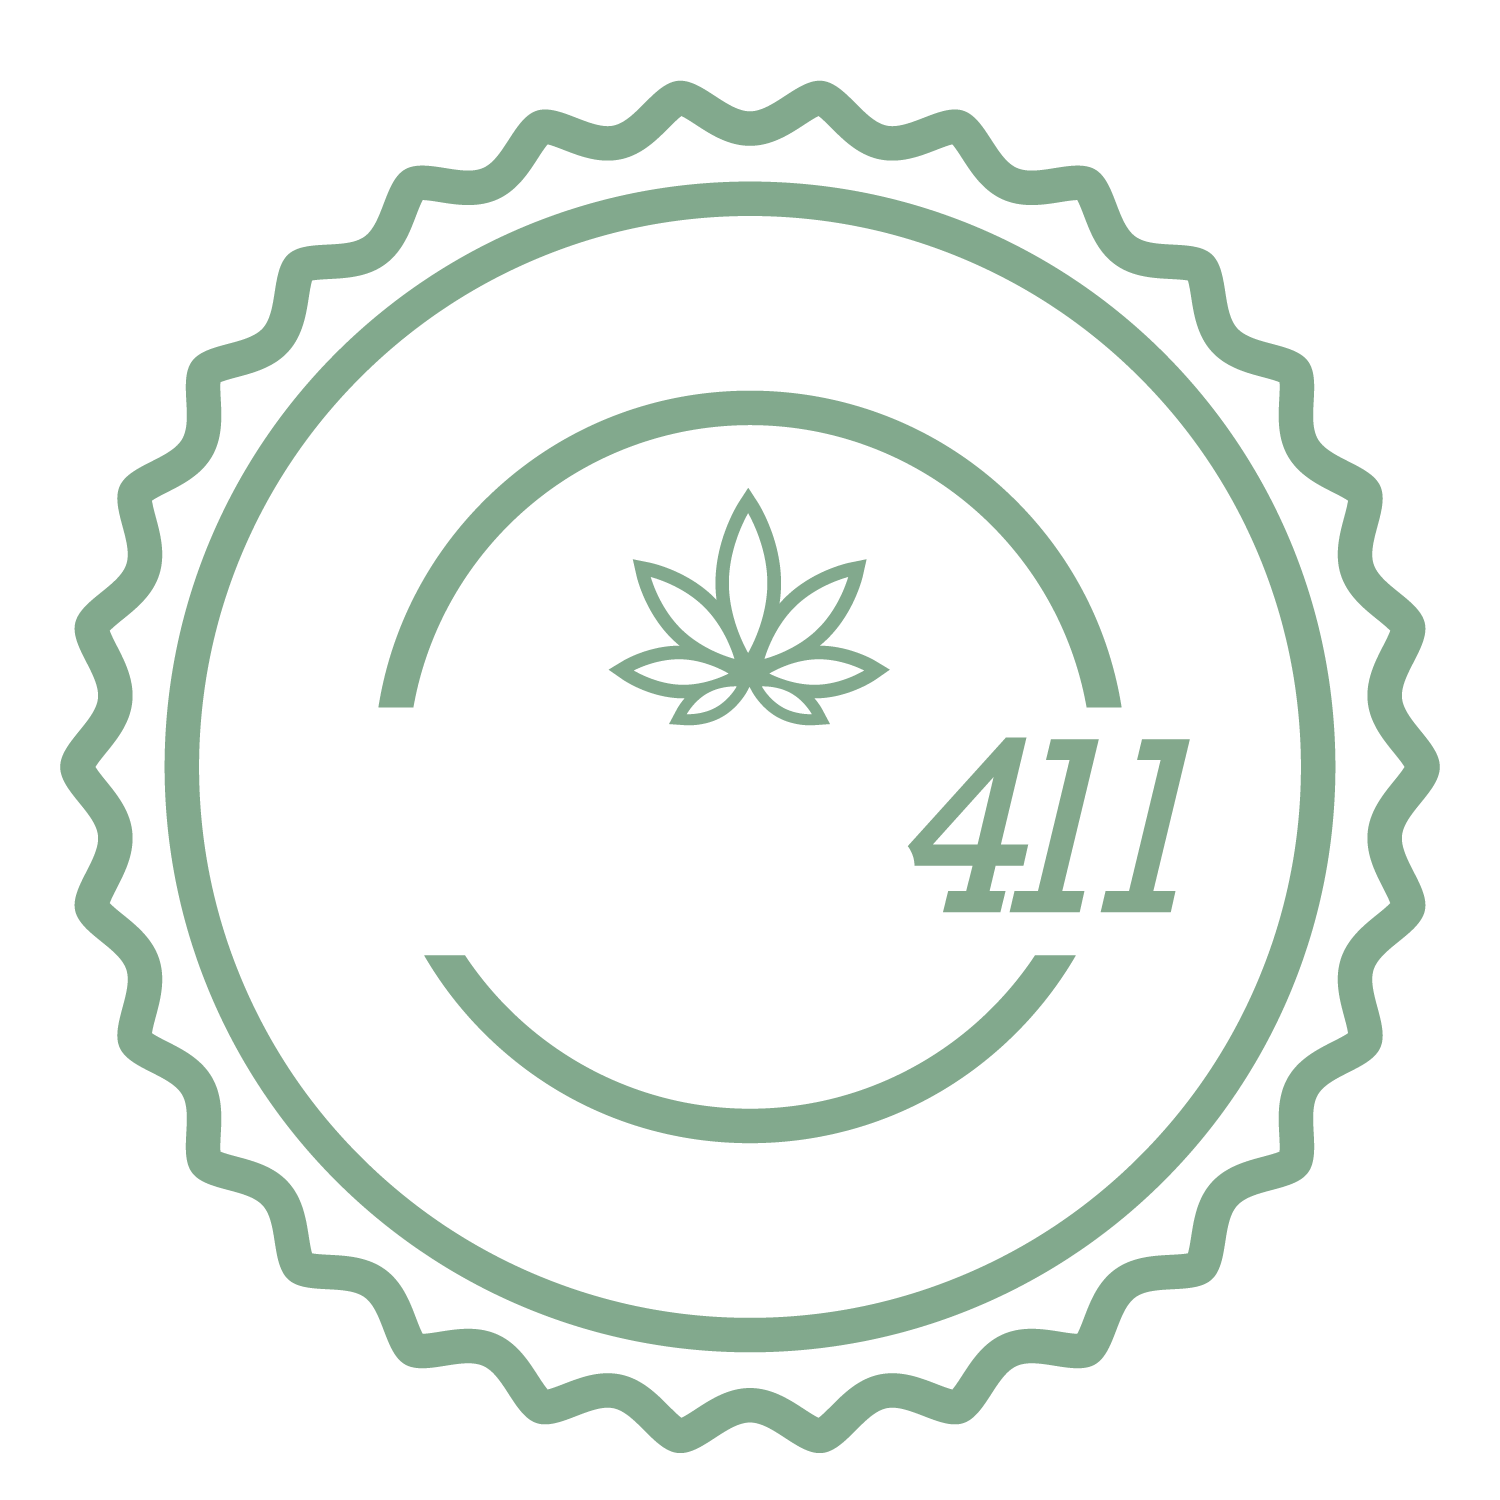 Leaf 411 Logo